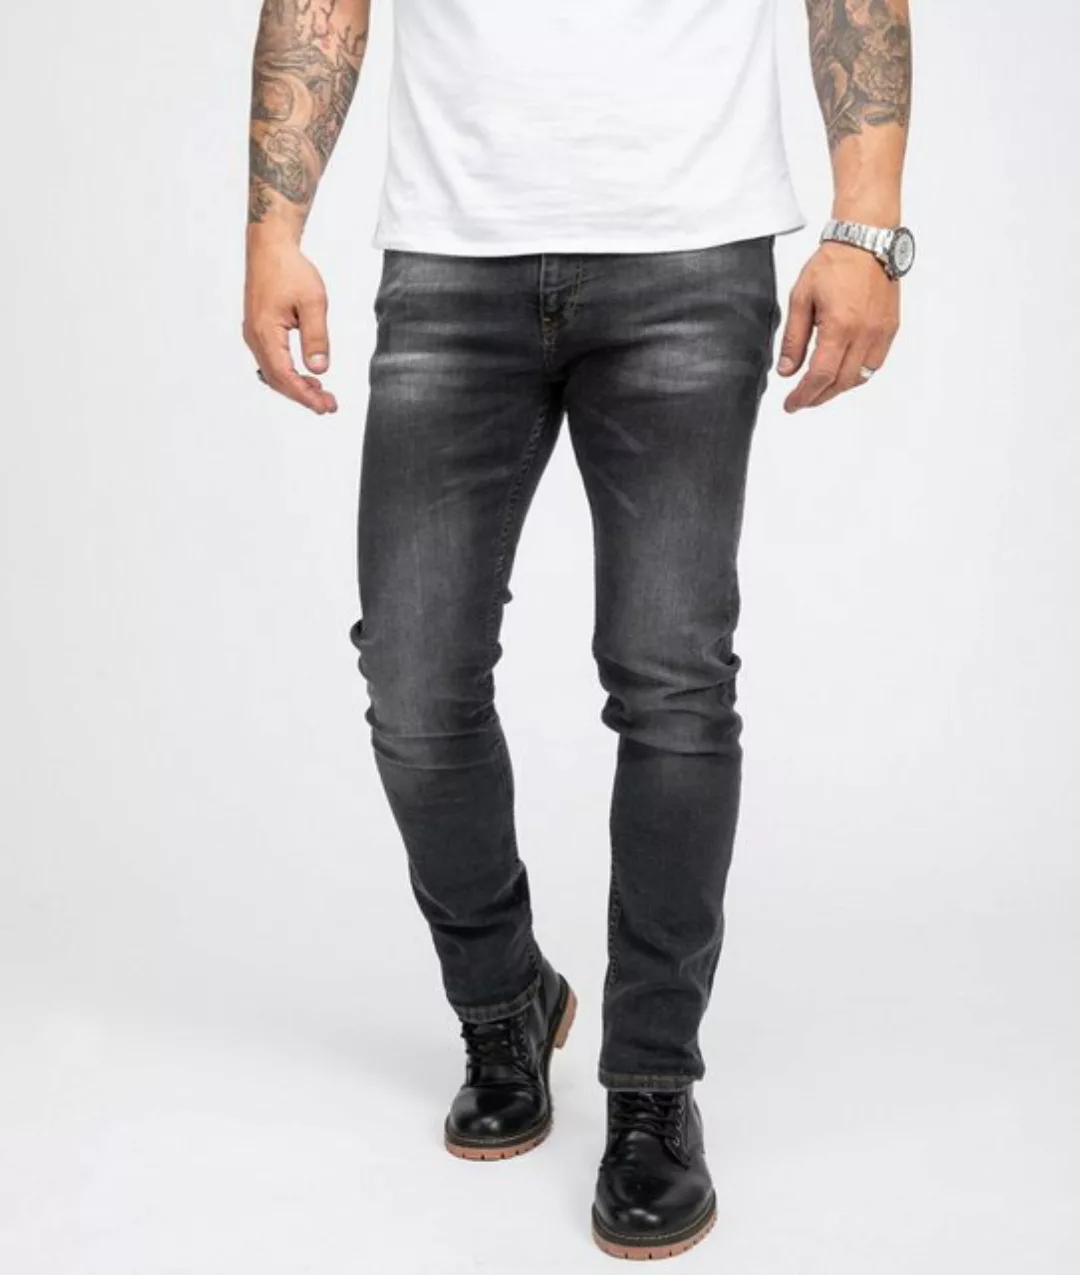 Indumentum Slim-fit-Jeans Herren Jeans Stonewashed Dunkelgrau IS-302 günstig online kaufen